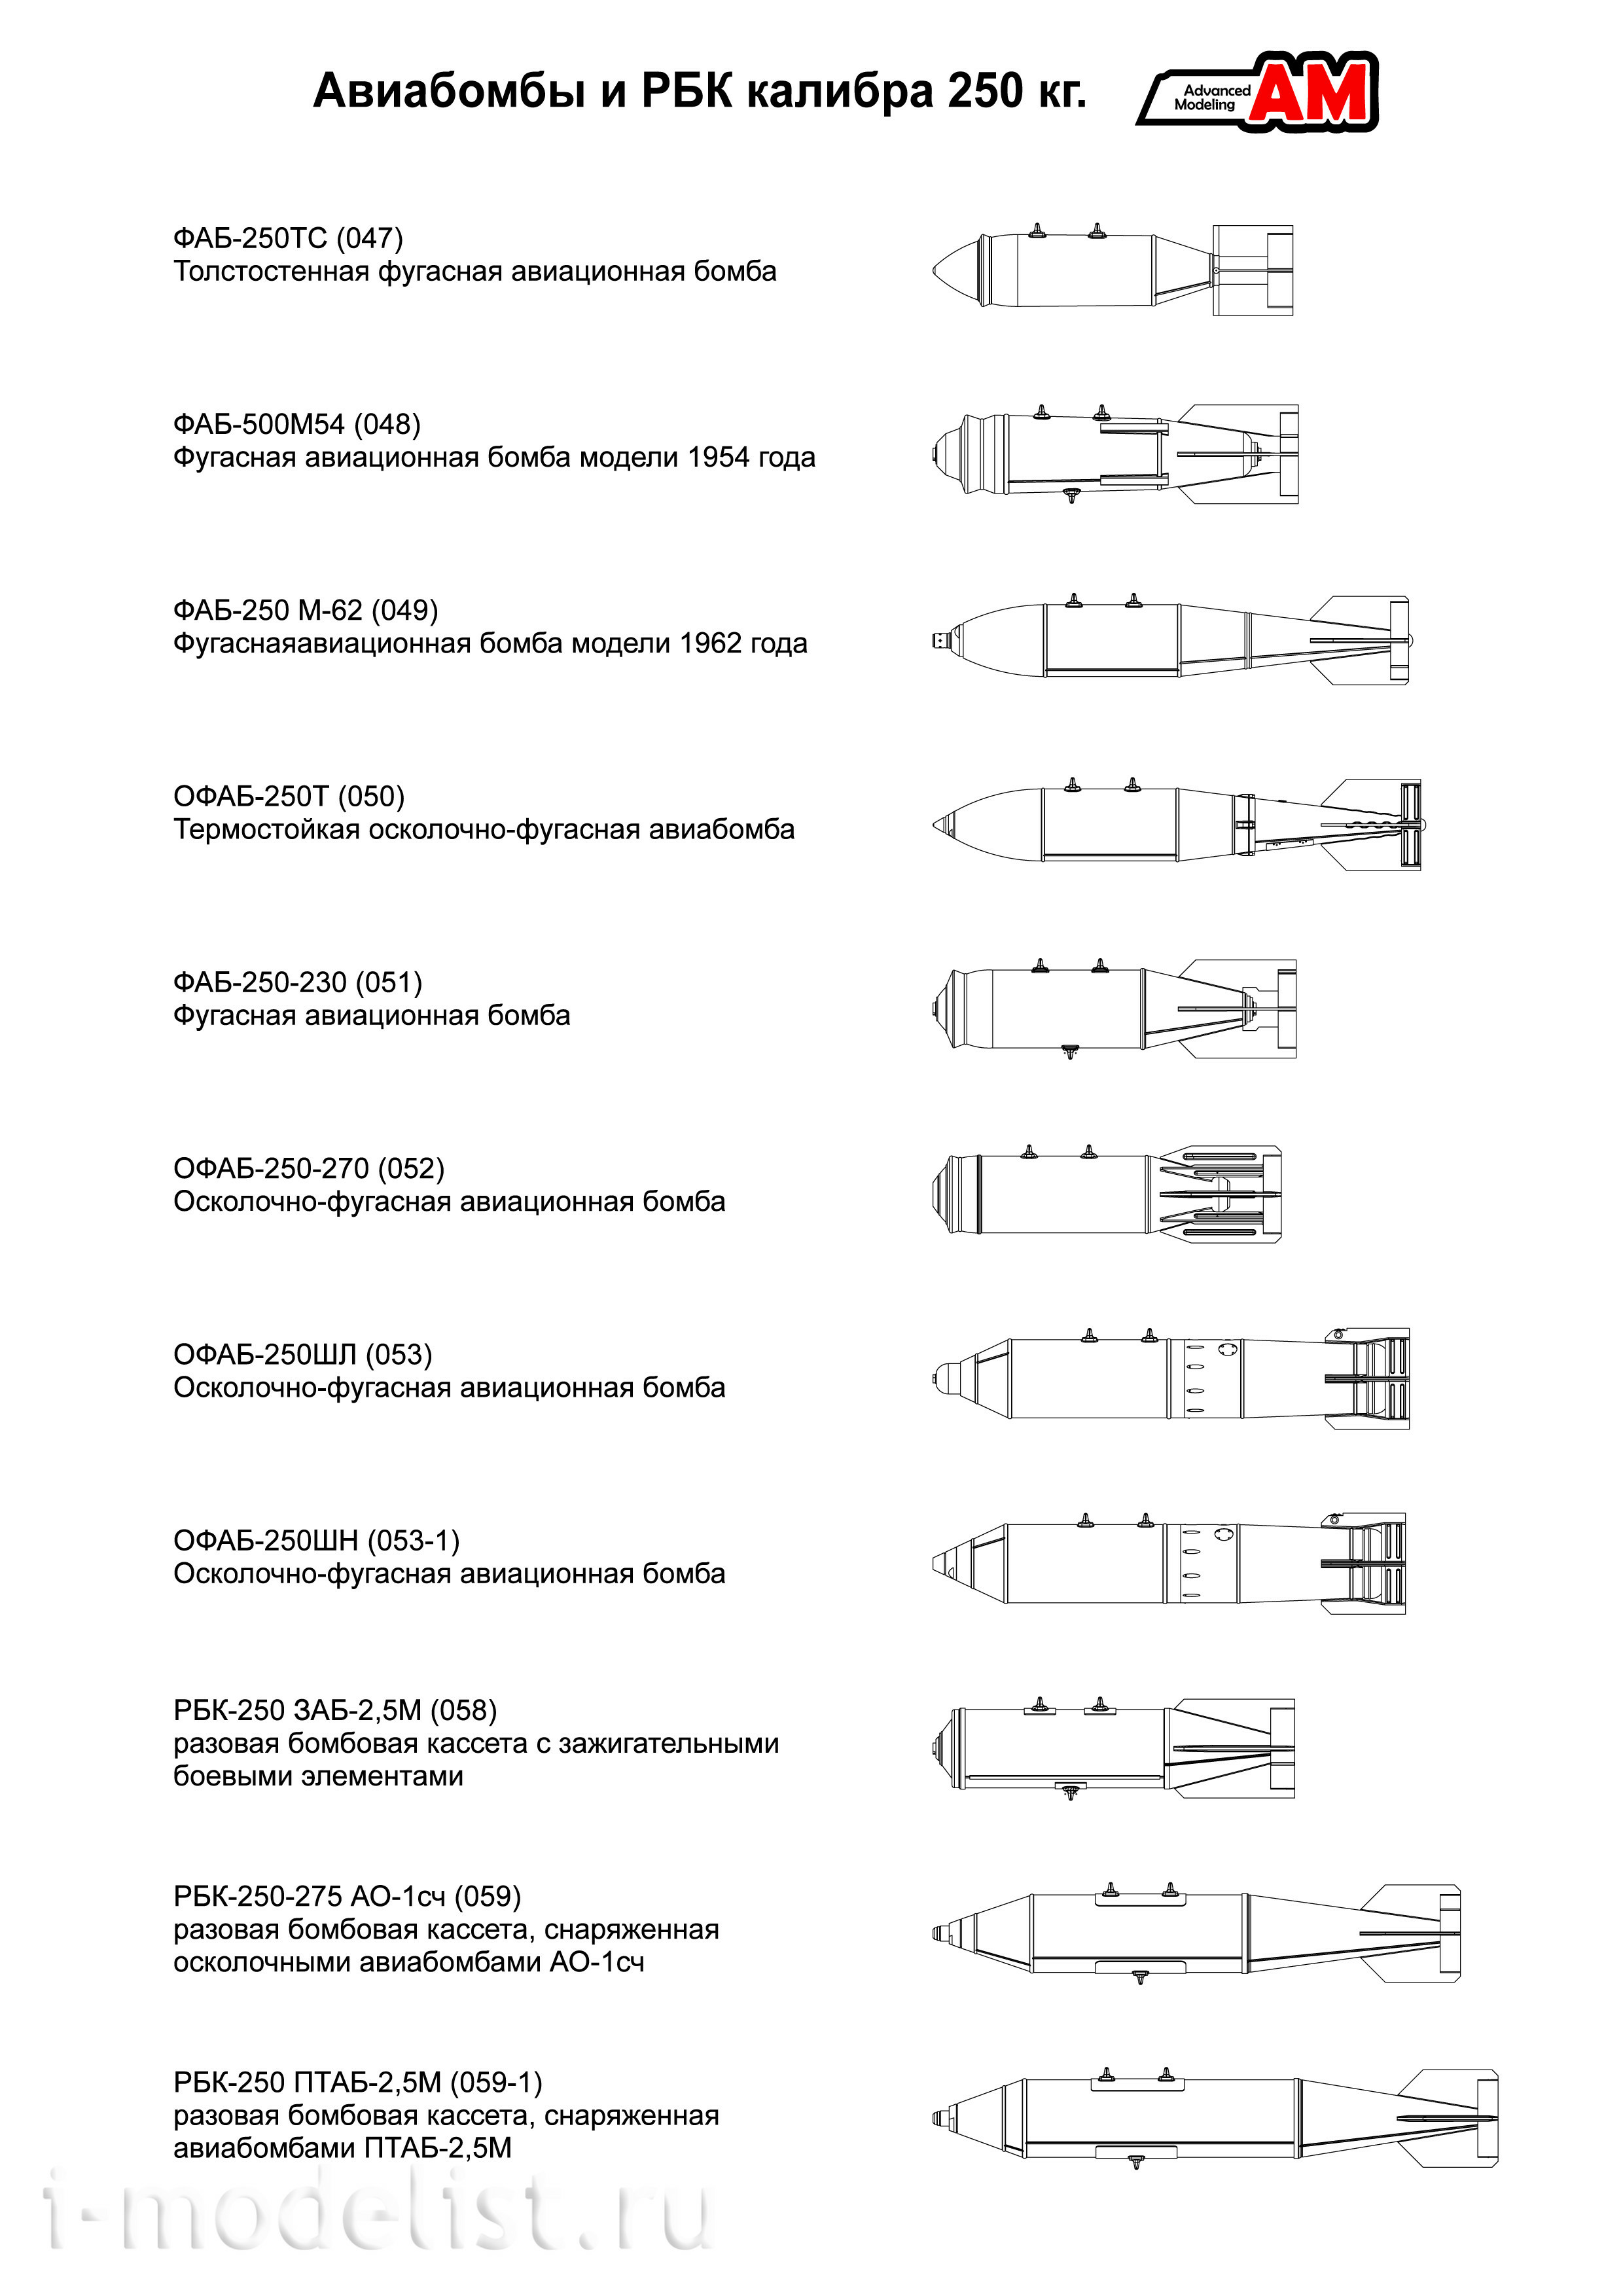 AMC48014 Advanced Modeling 1/48 С-24Б неуправляемая авиационная ракета с пусковым устройством АПУ-68